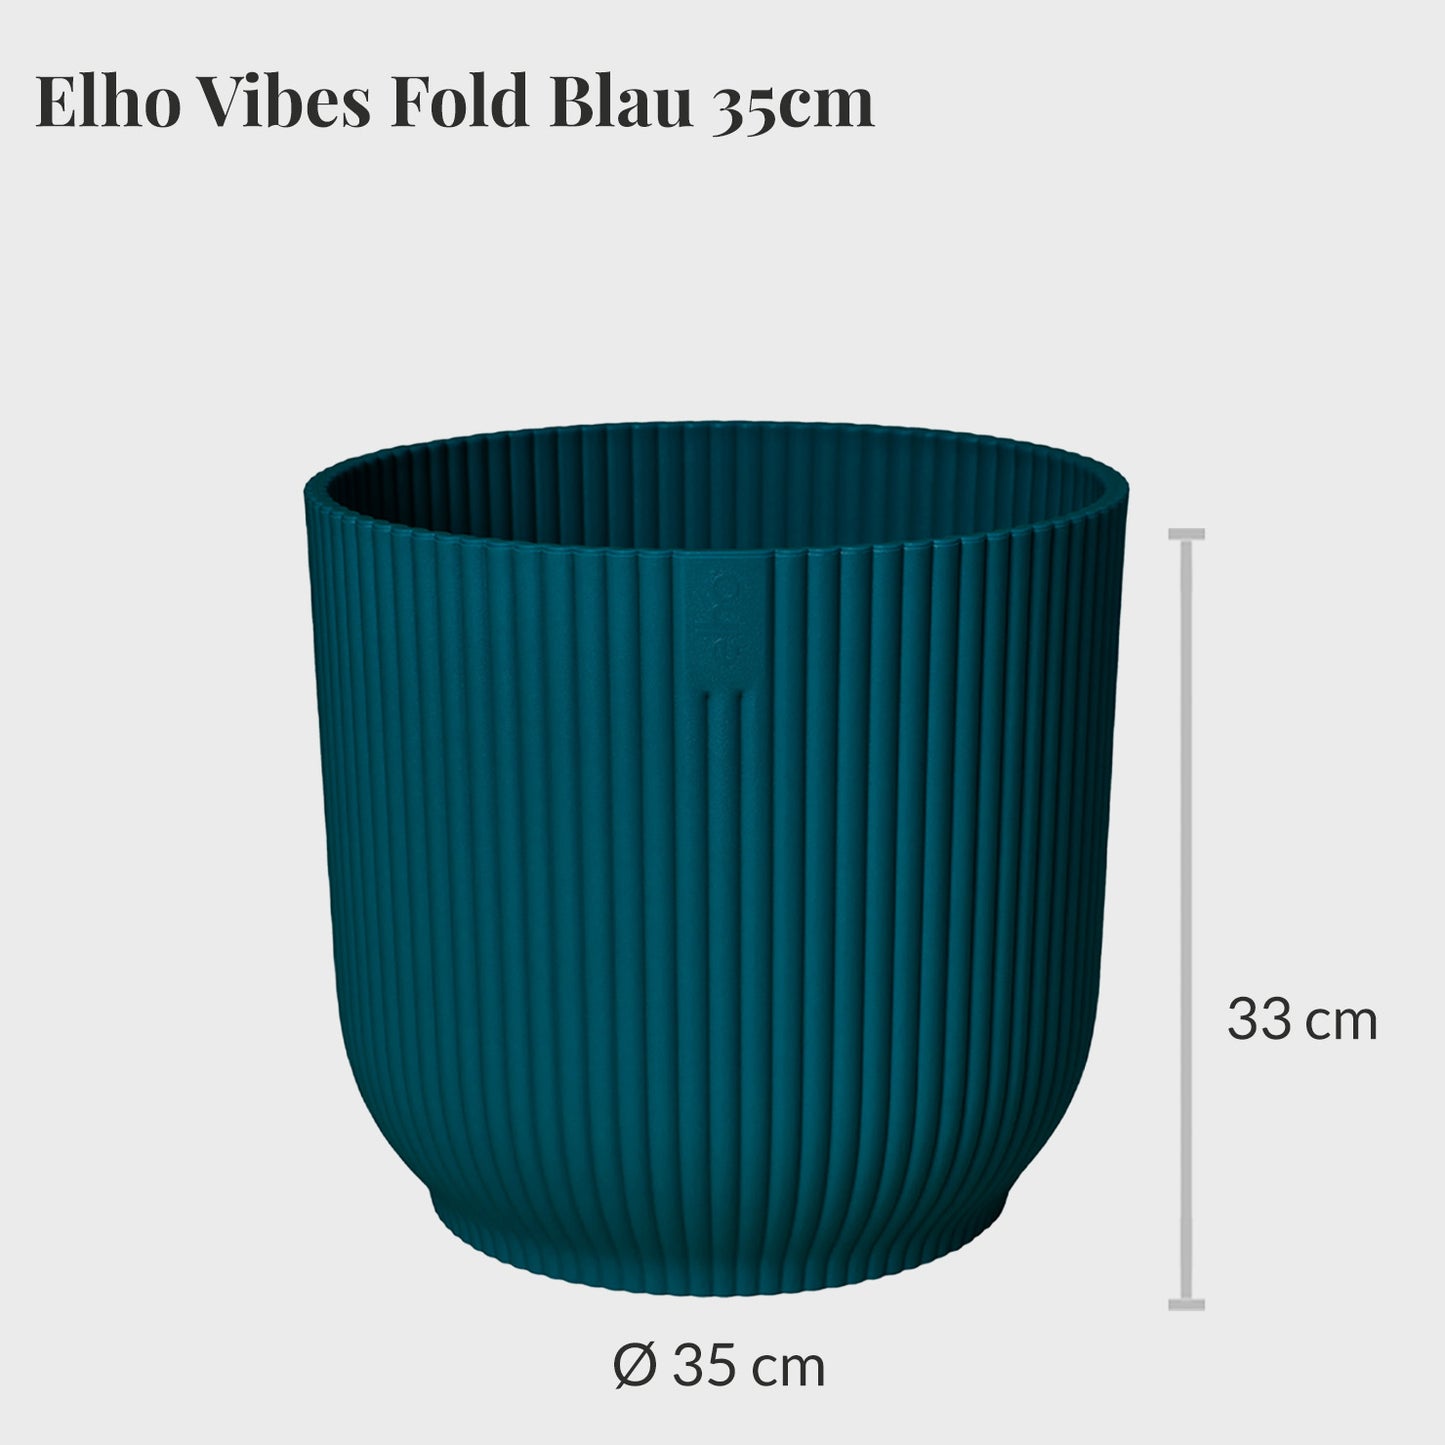 Elho Vibes Fold 35cm